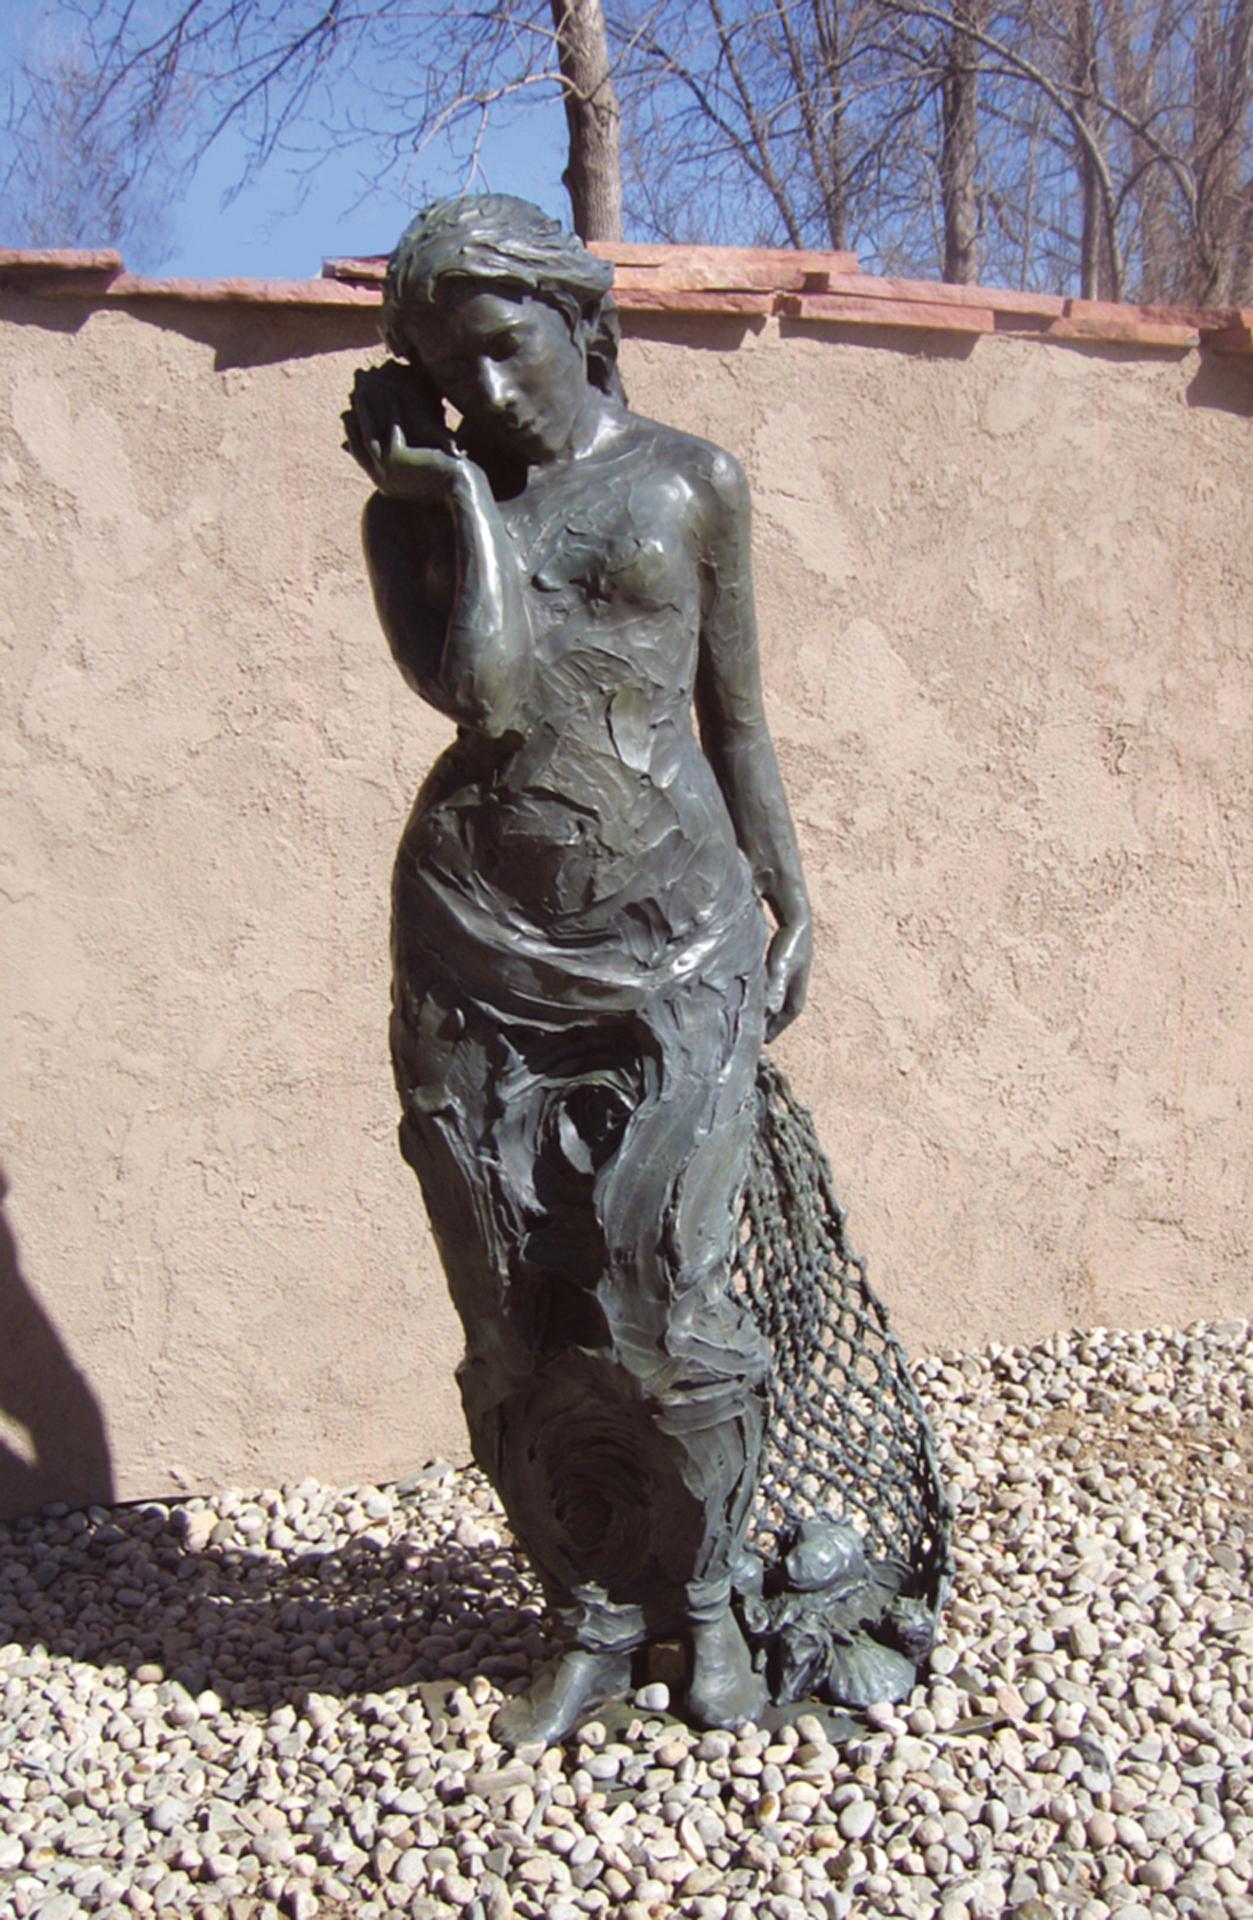 Wasser von Jane DeDecker
Allegorisches Element Figurative Bronze mit Blattgold
72x25x15